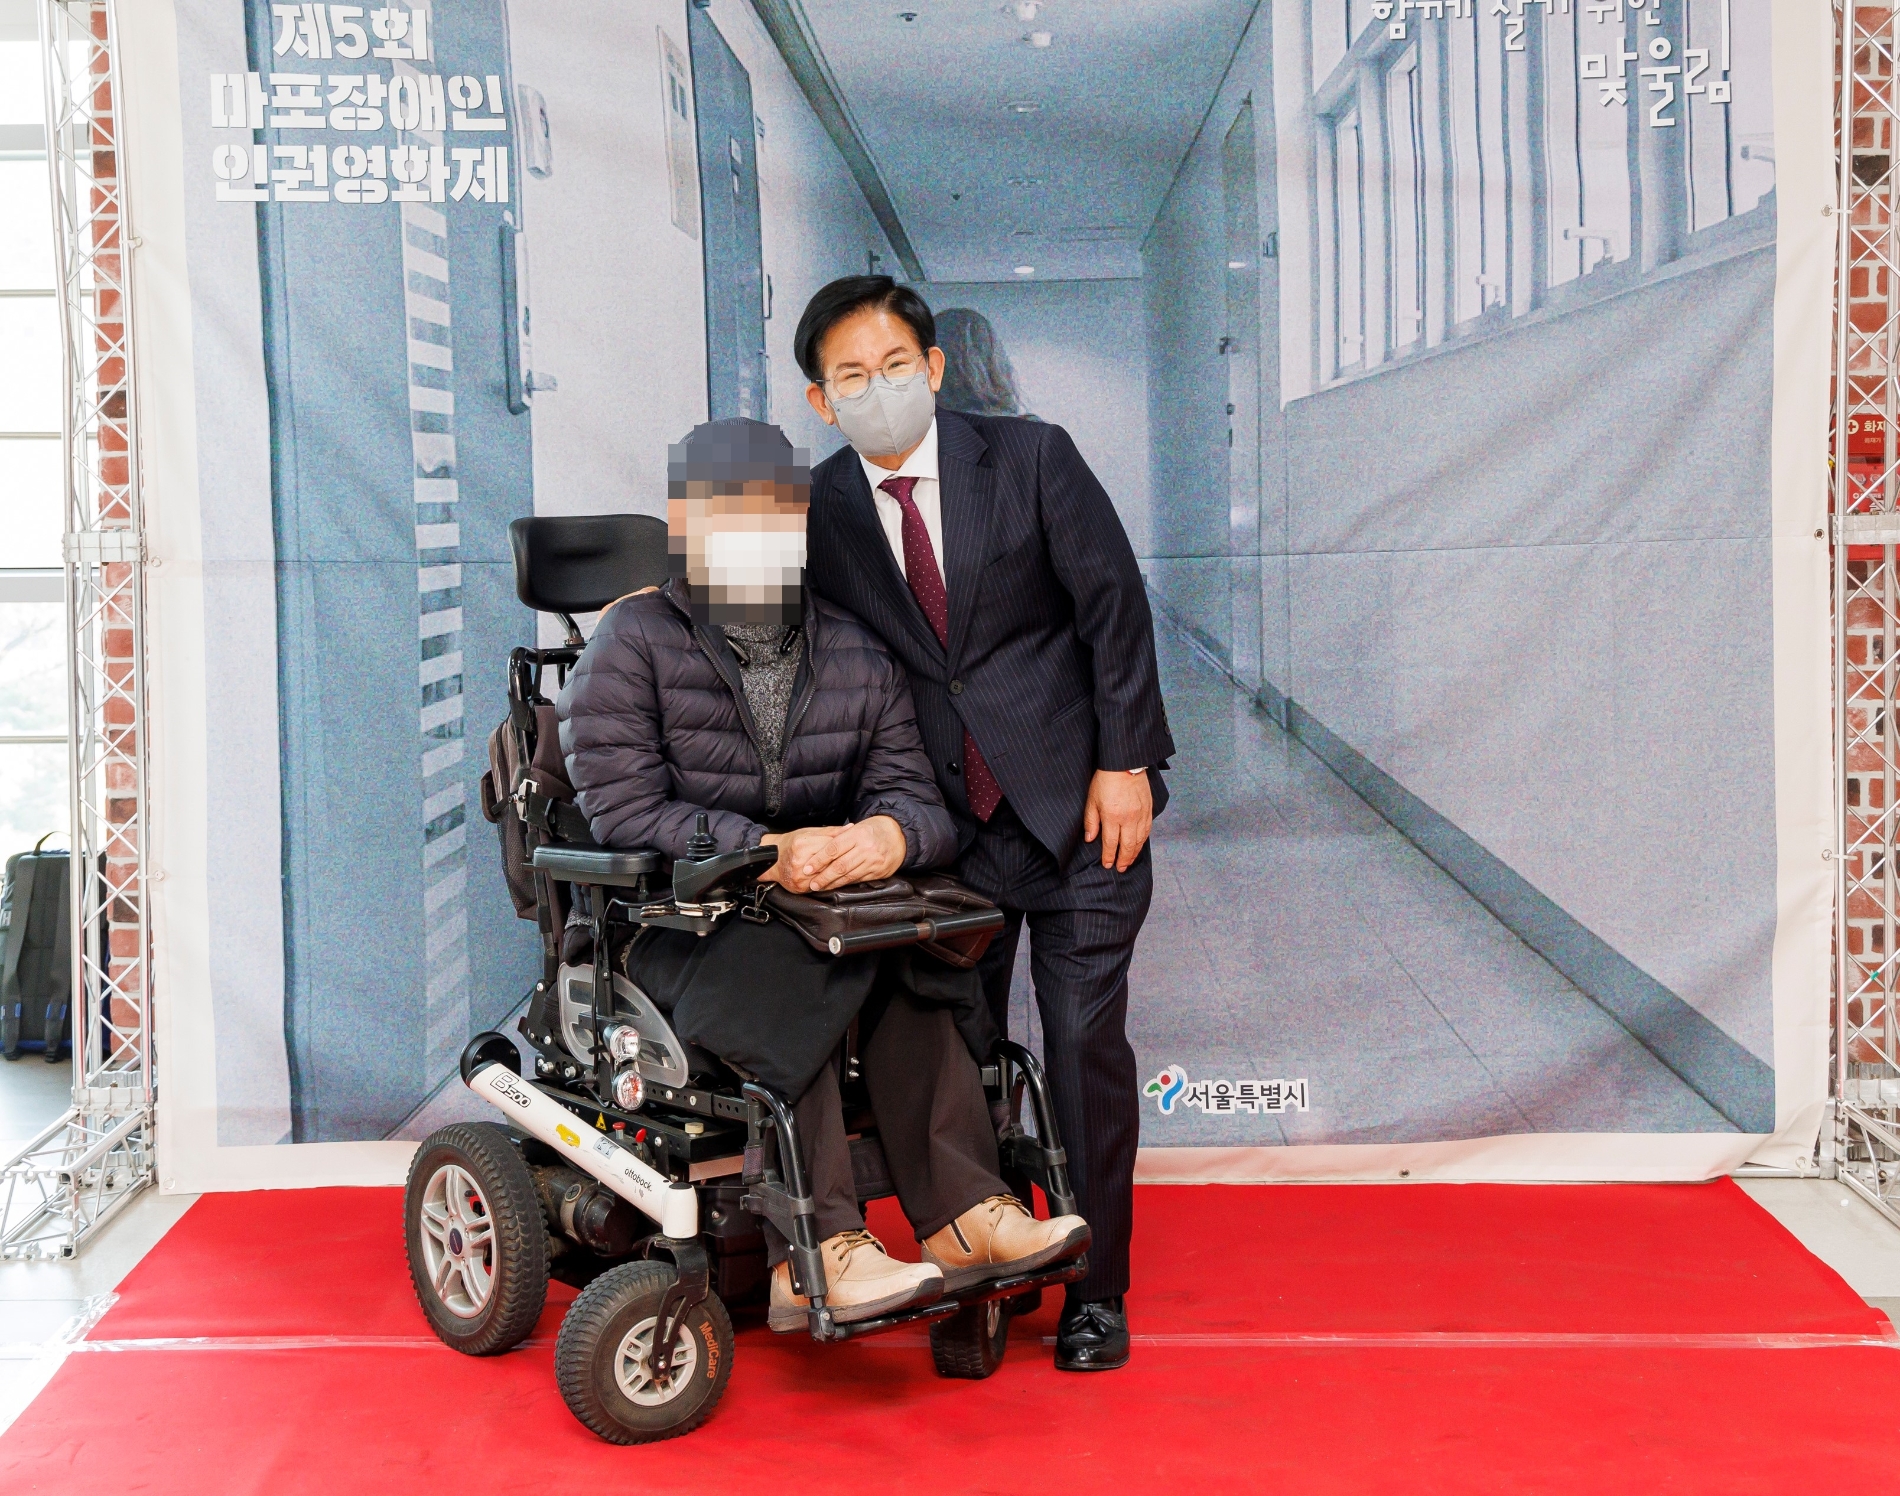 박강수 마포구청장(오른쪽)이 장애인 인권 증진을 위해 열린 제5회 마포장애인 인권영화제를 찾은 방문객과 소통하는 모습./사진제공=마포구 